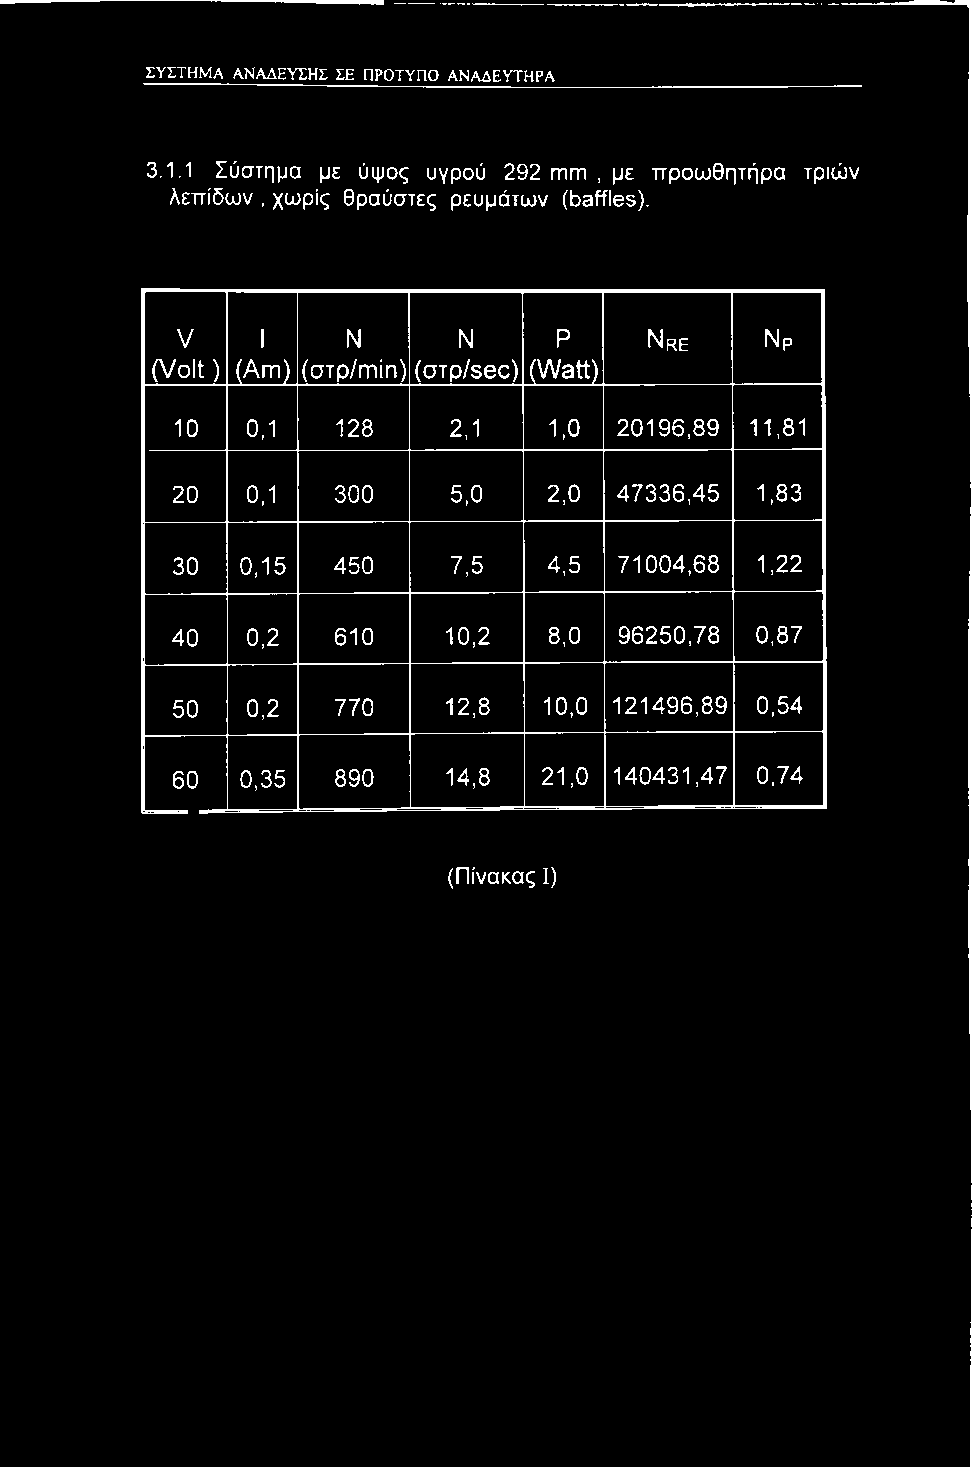 V (Volt) 1 (Am) Ν ( o T p / m i n ) Ν Ρ (στρ/sec) (Watt) Nre 10 0,1 128 2,1 1,0 20196,89 11,81 20 0,1 300